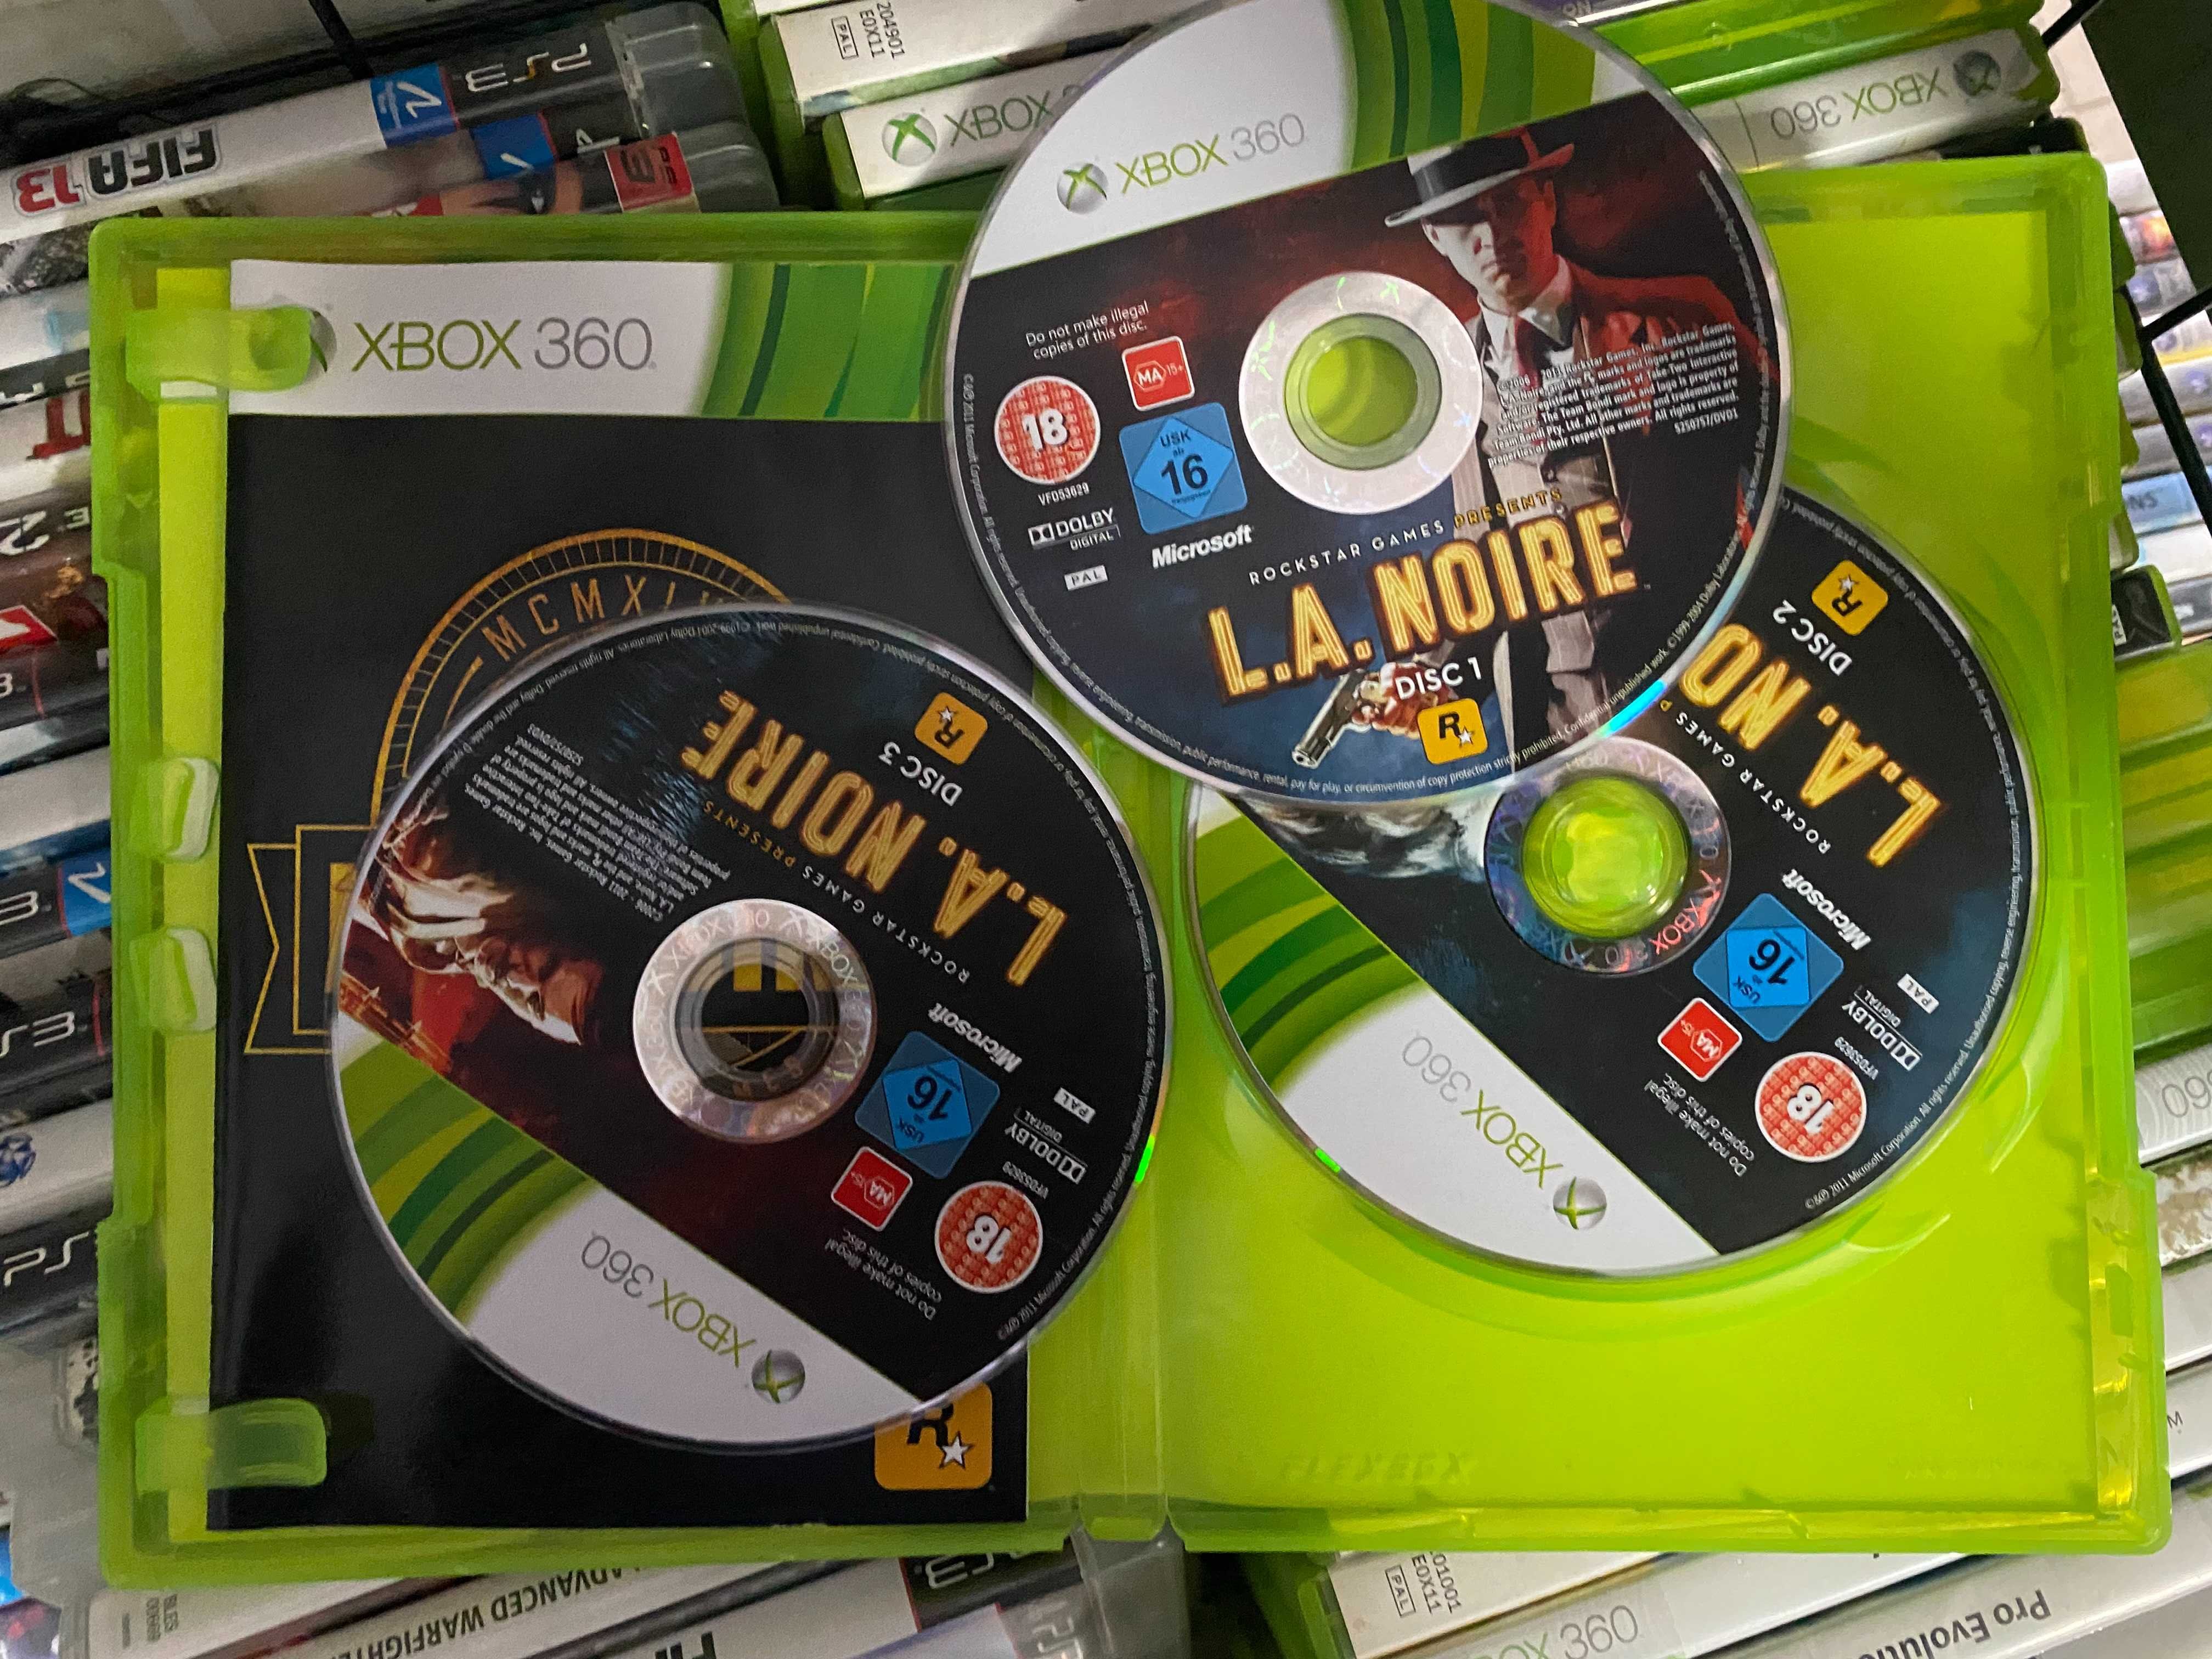 L.A. Noire|Xbox 360